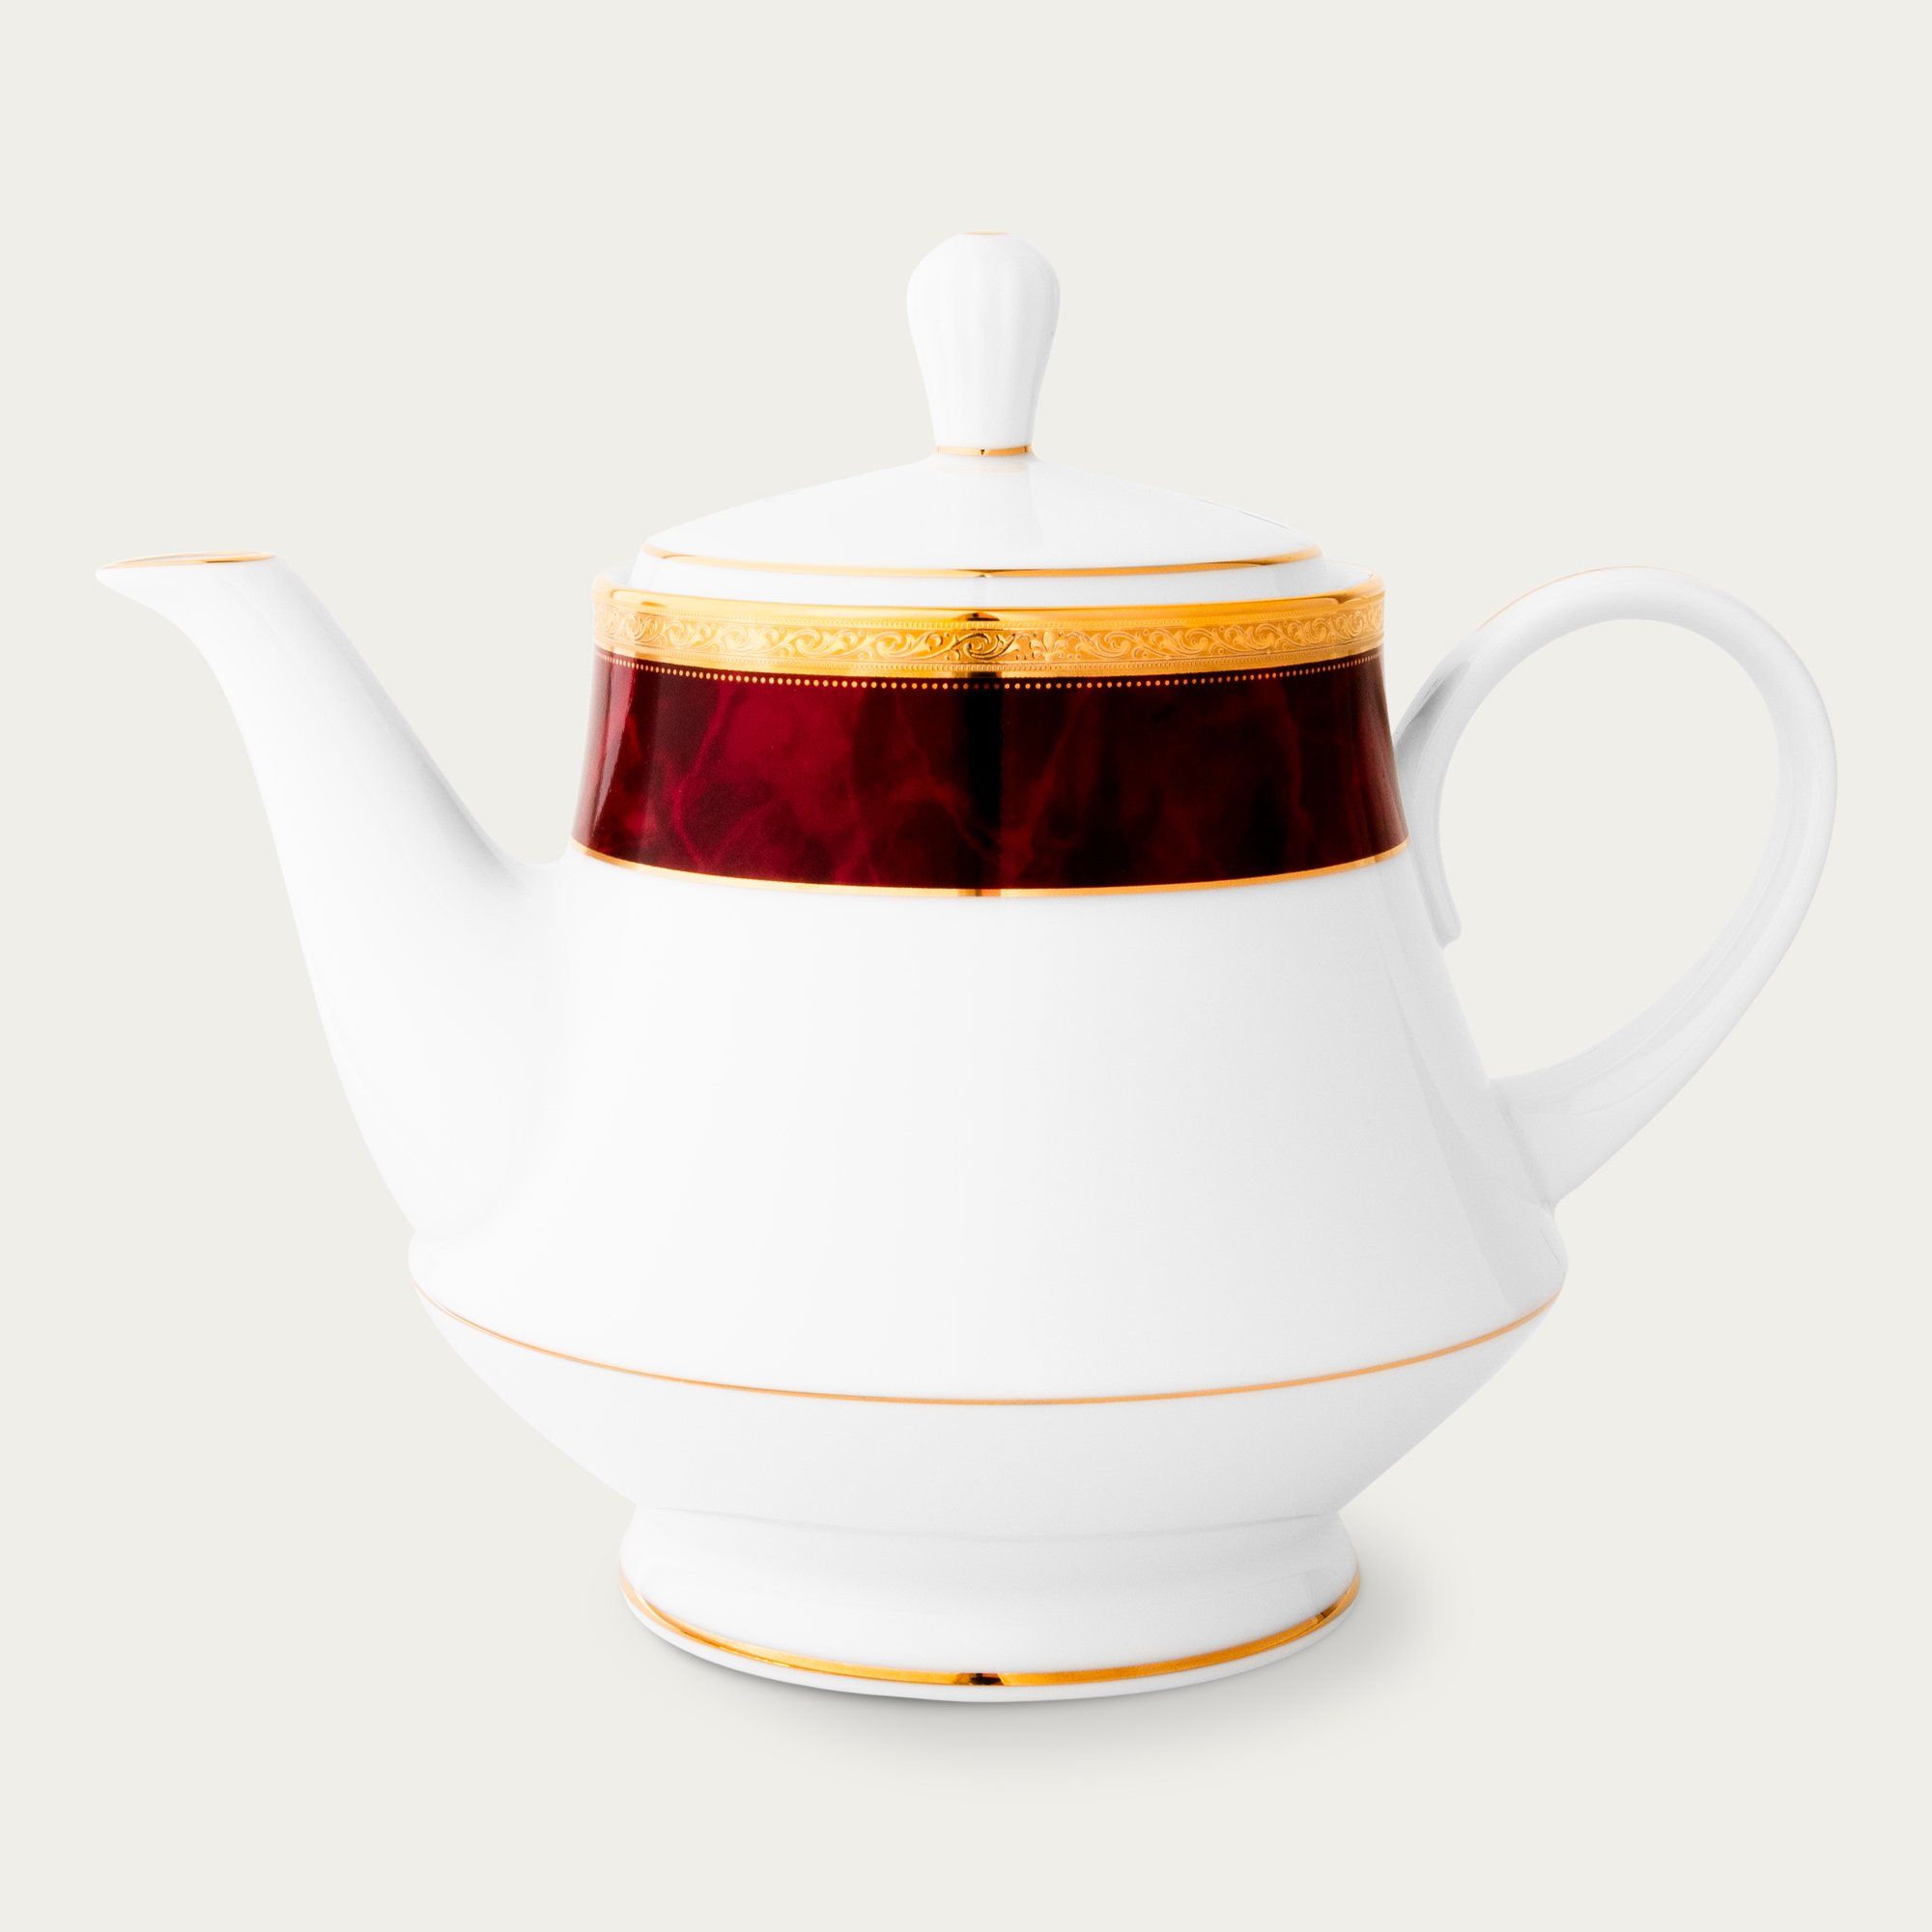  Ấm trà (bình trà) dung tích 1200ml | MAJESTIC BURGUN M-166L-91123 